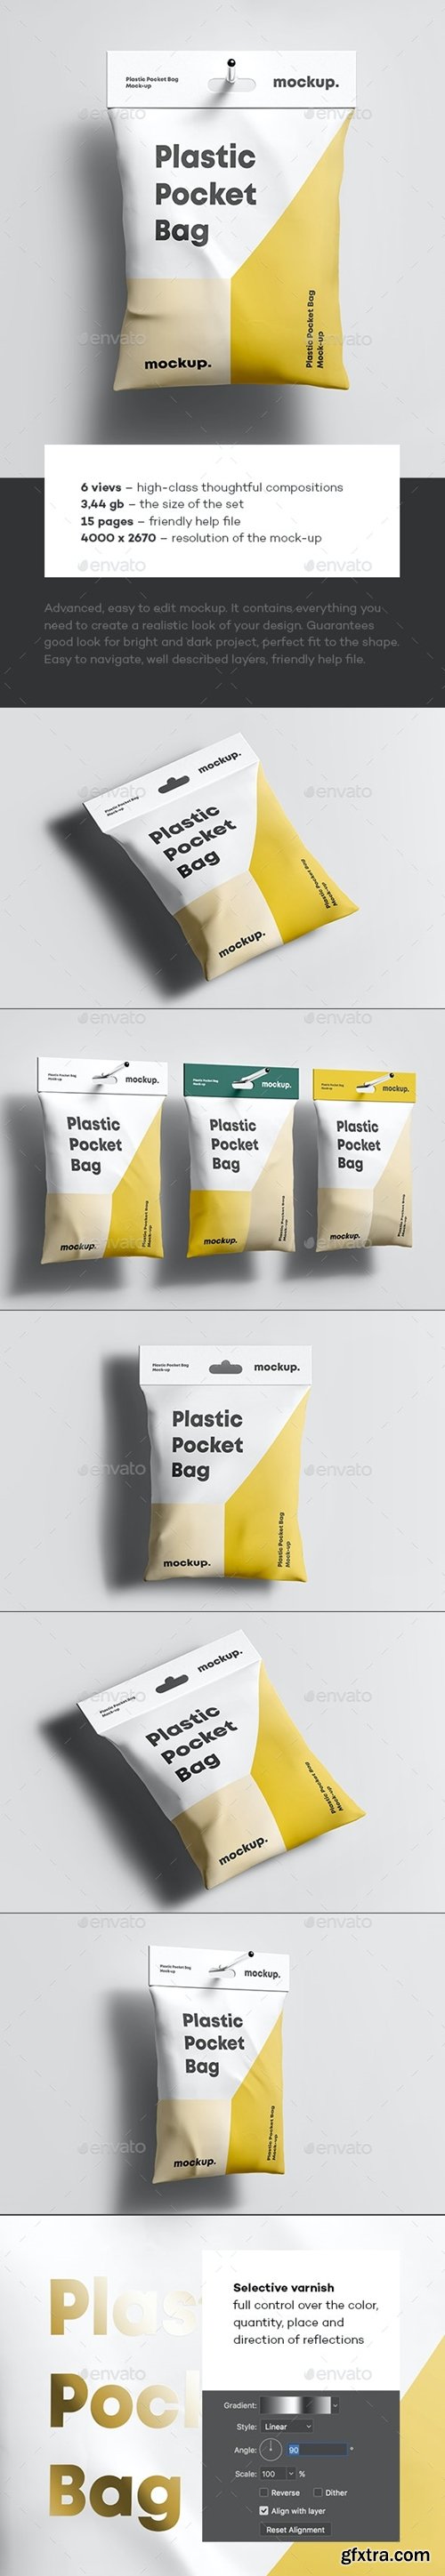 Graphicriver - Plastic Pocket Bag Mock-up 35372931